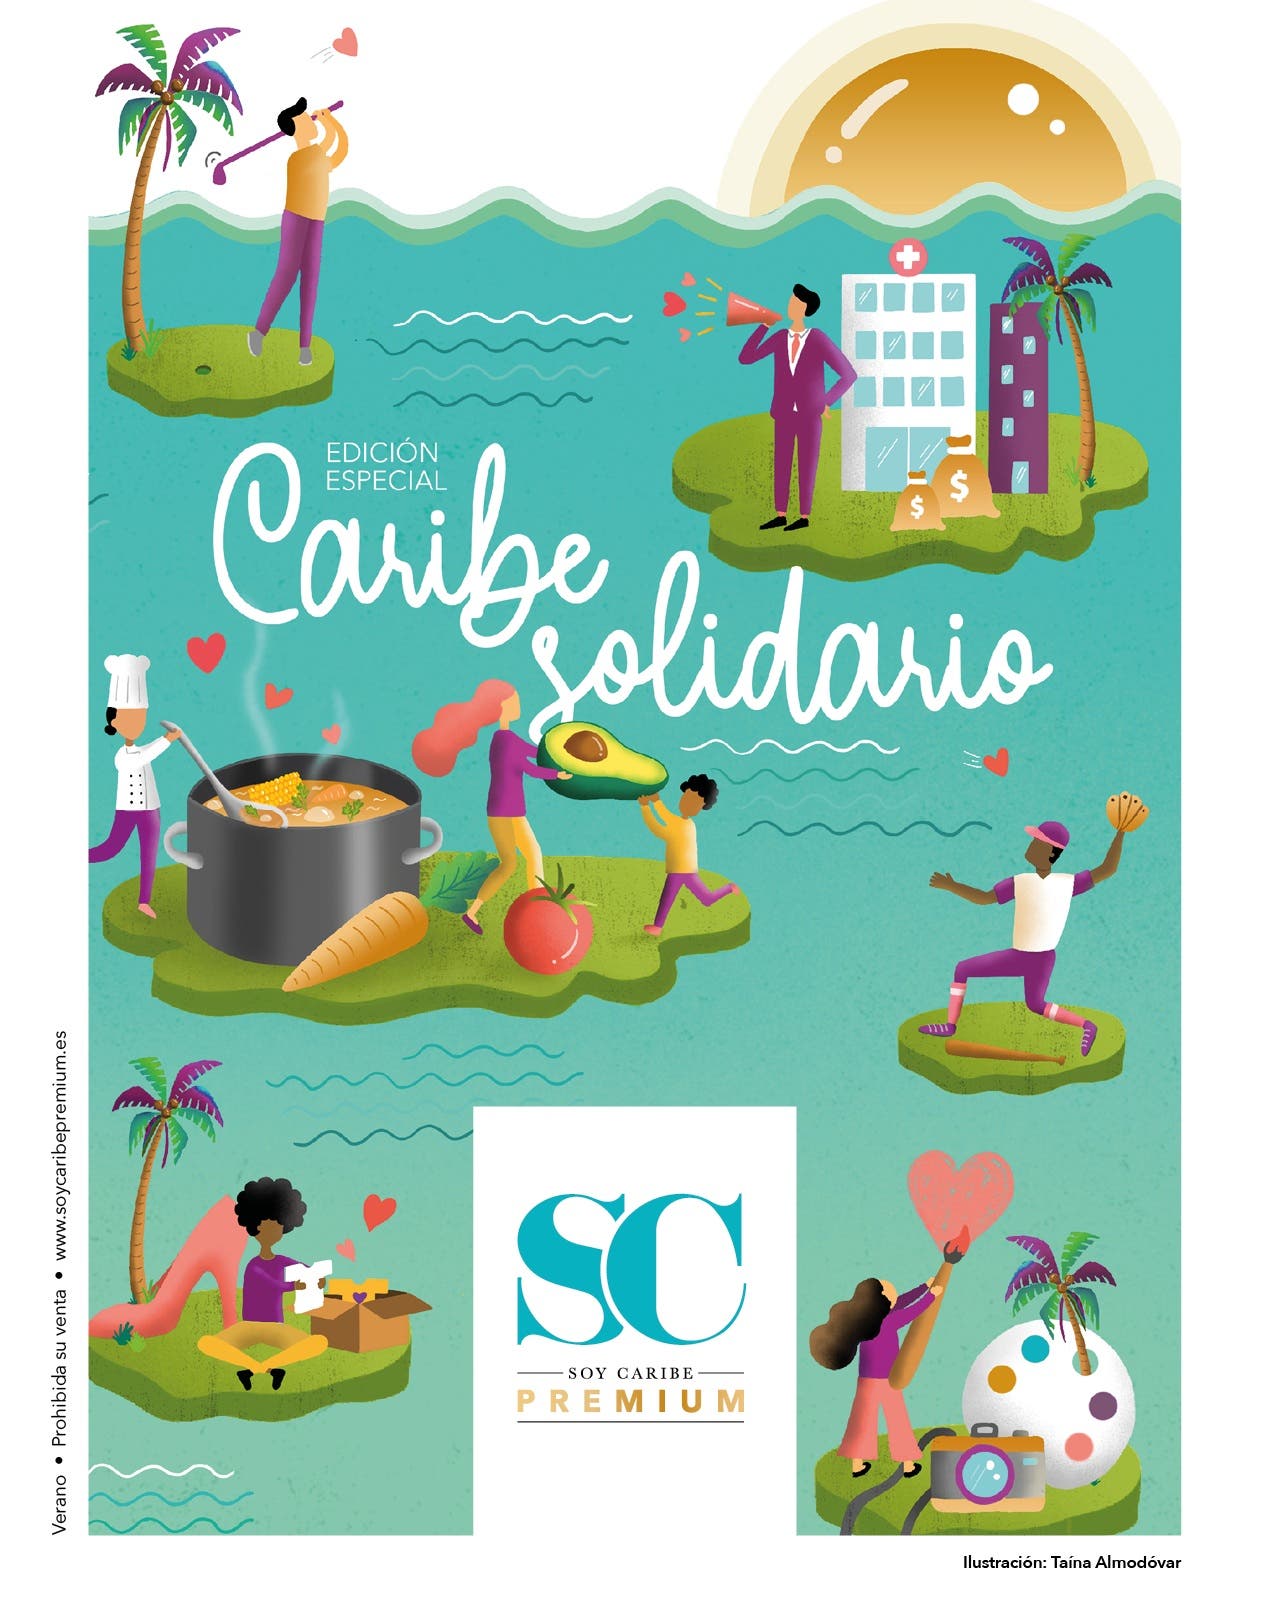 Revista Soy Caribe Premium lanza en Madrid edición especial: Caribe Solidario en tiempos de Covid-19